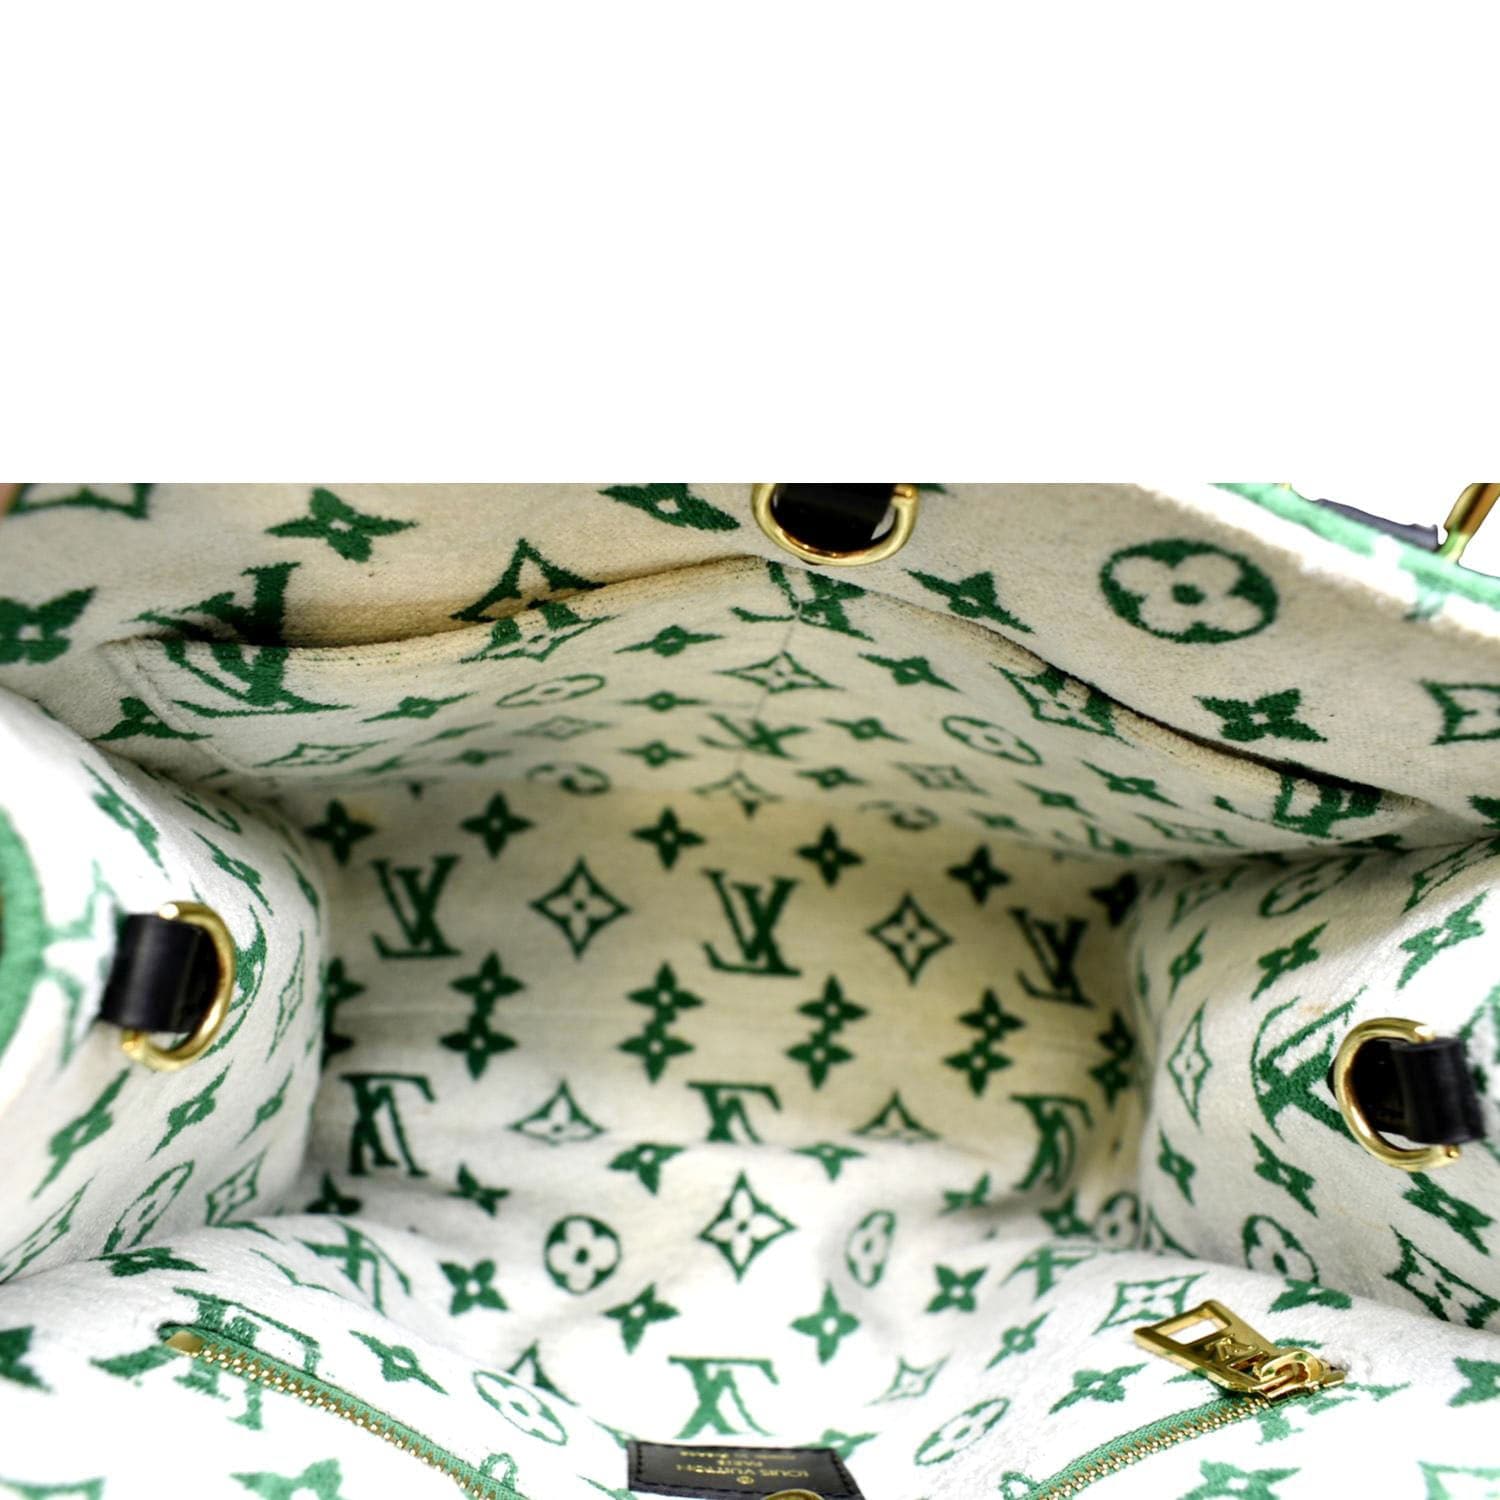 Onthego velvet handbag Louis Vuitton Green in Velvet - 36137077